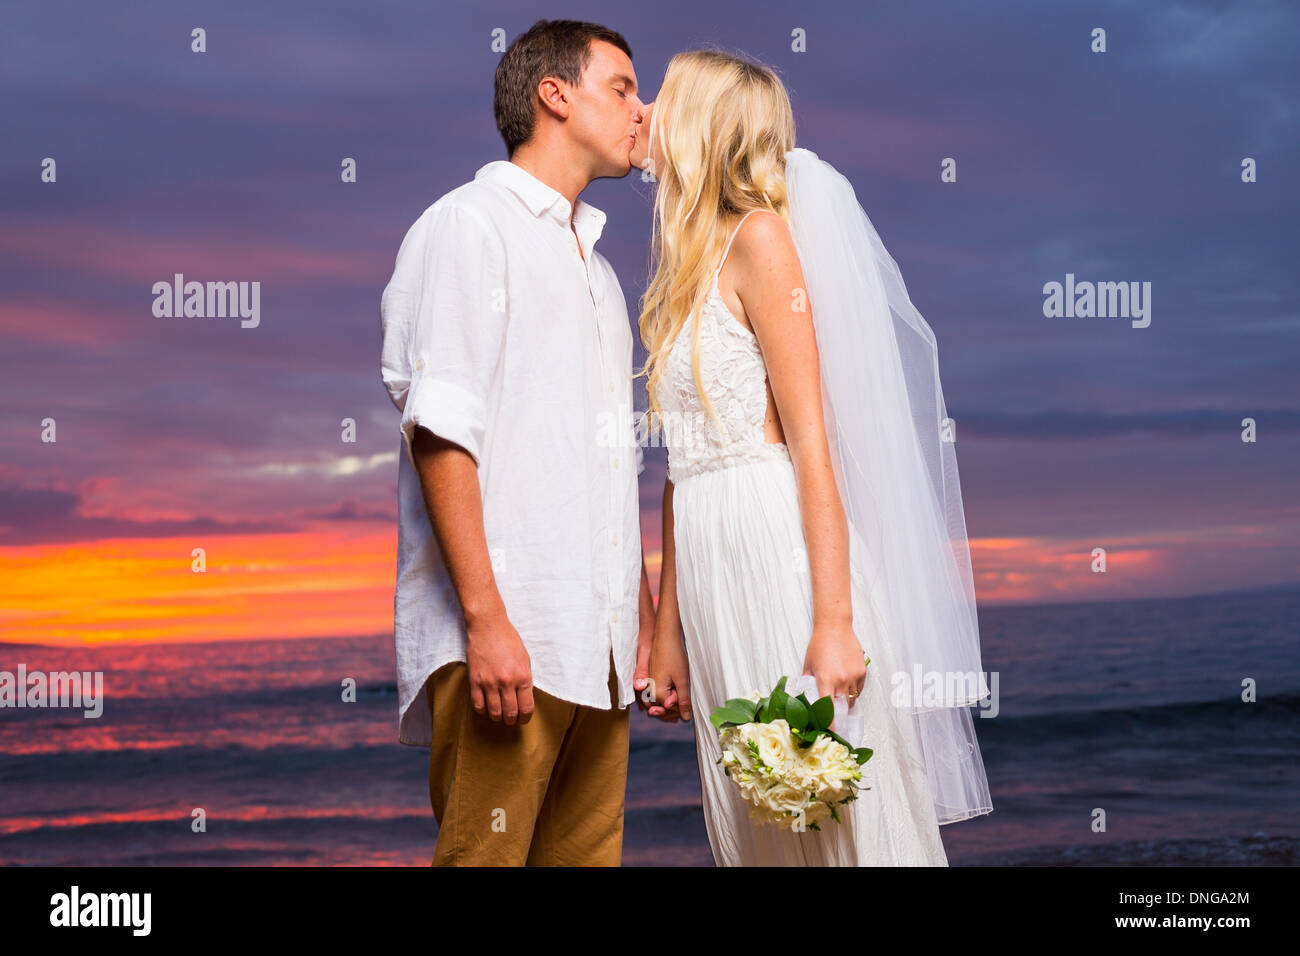 Appena una coppia sposata baciare sulla spiaggia tropicale al tramonto, Hawaii matrimonio sulla spiaggia Foto Stock